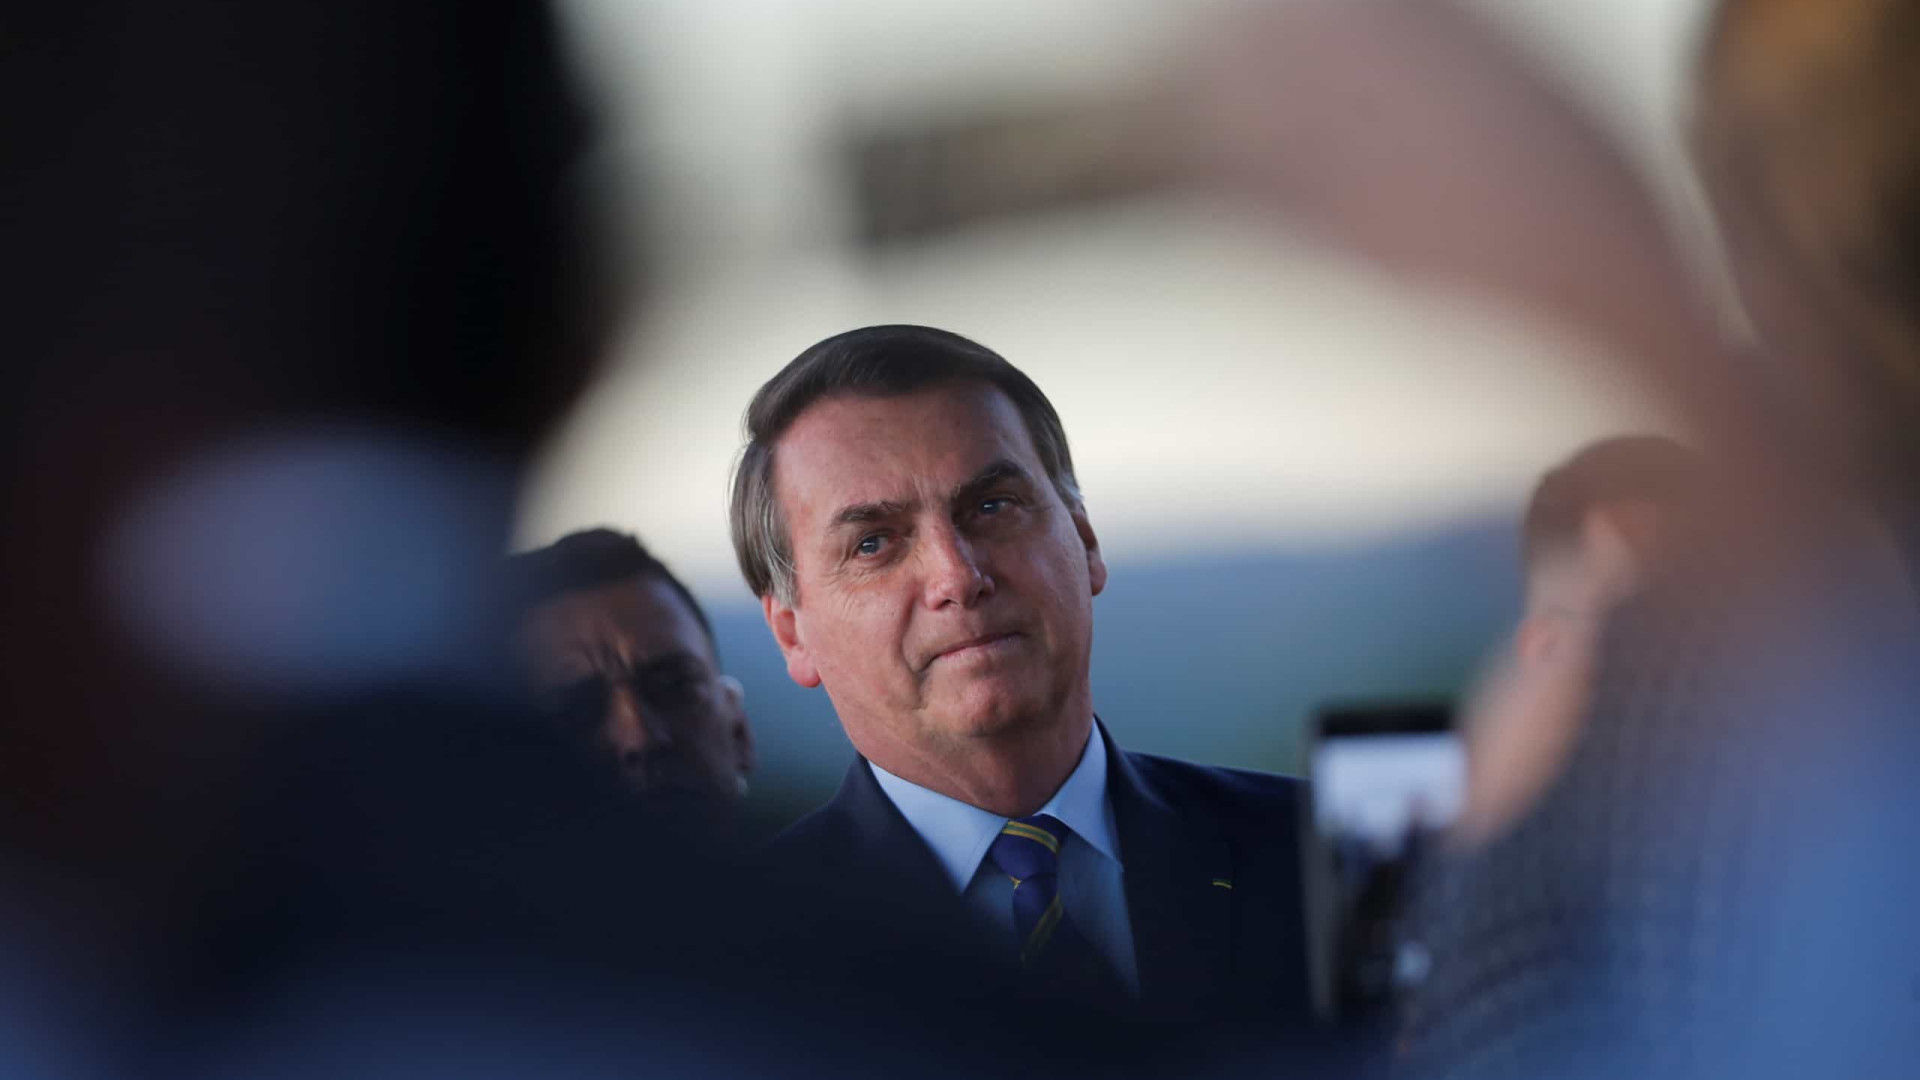 Longe de entrevistas, Bolsonaro gera crises com declarações em lives e conversas com apoiadores